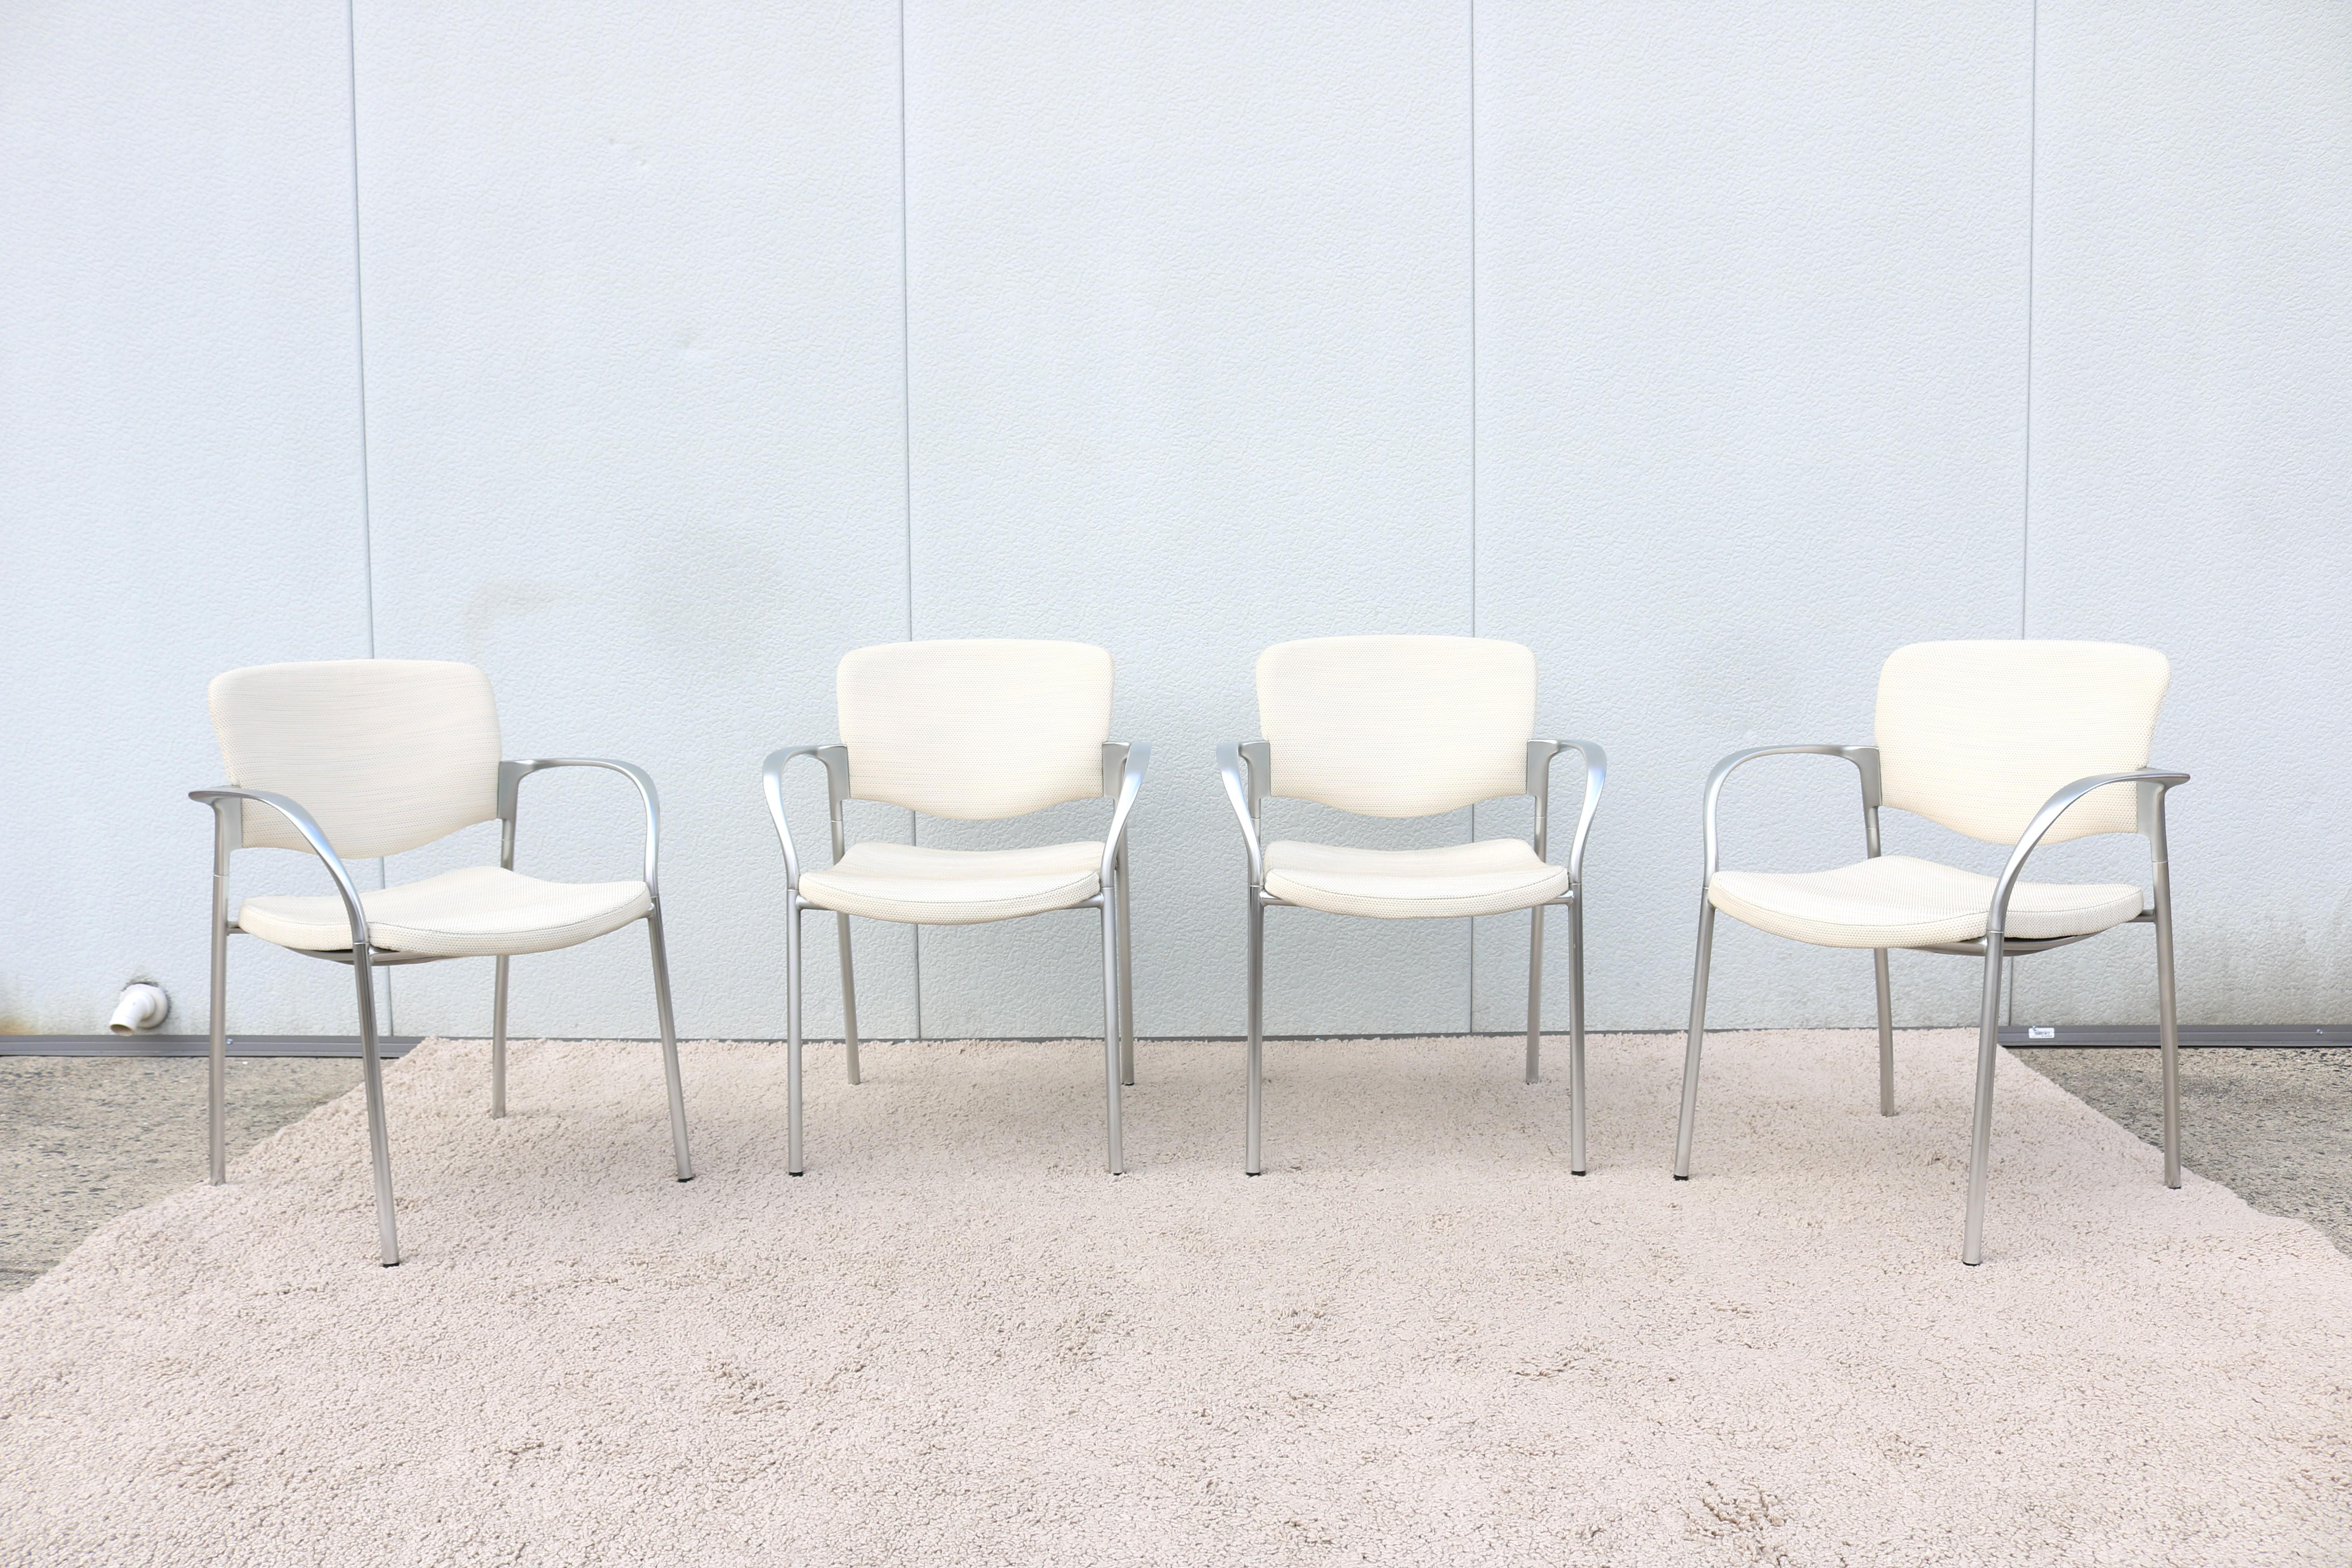 La chaise empilable Welcome de Stylex est très élégante et présente un aspect contemporain épuré. 
Sa conception légère et sa fonction d'empilage lui permettent de s'adapter à la plupart des situations et des besoins.
Une belle chaise polyvalente